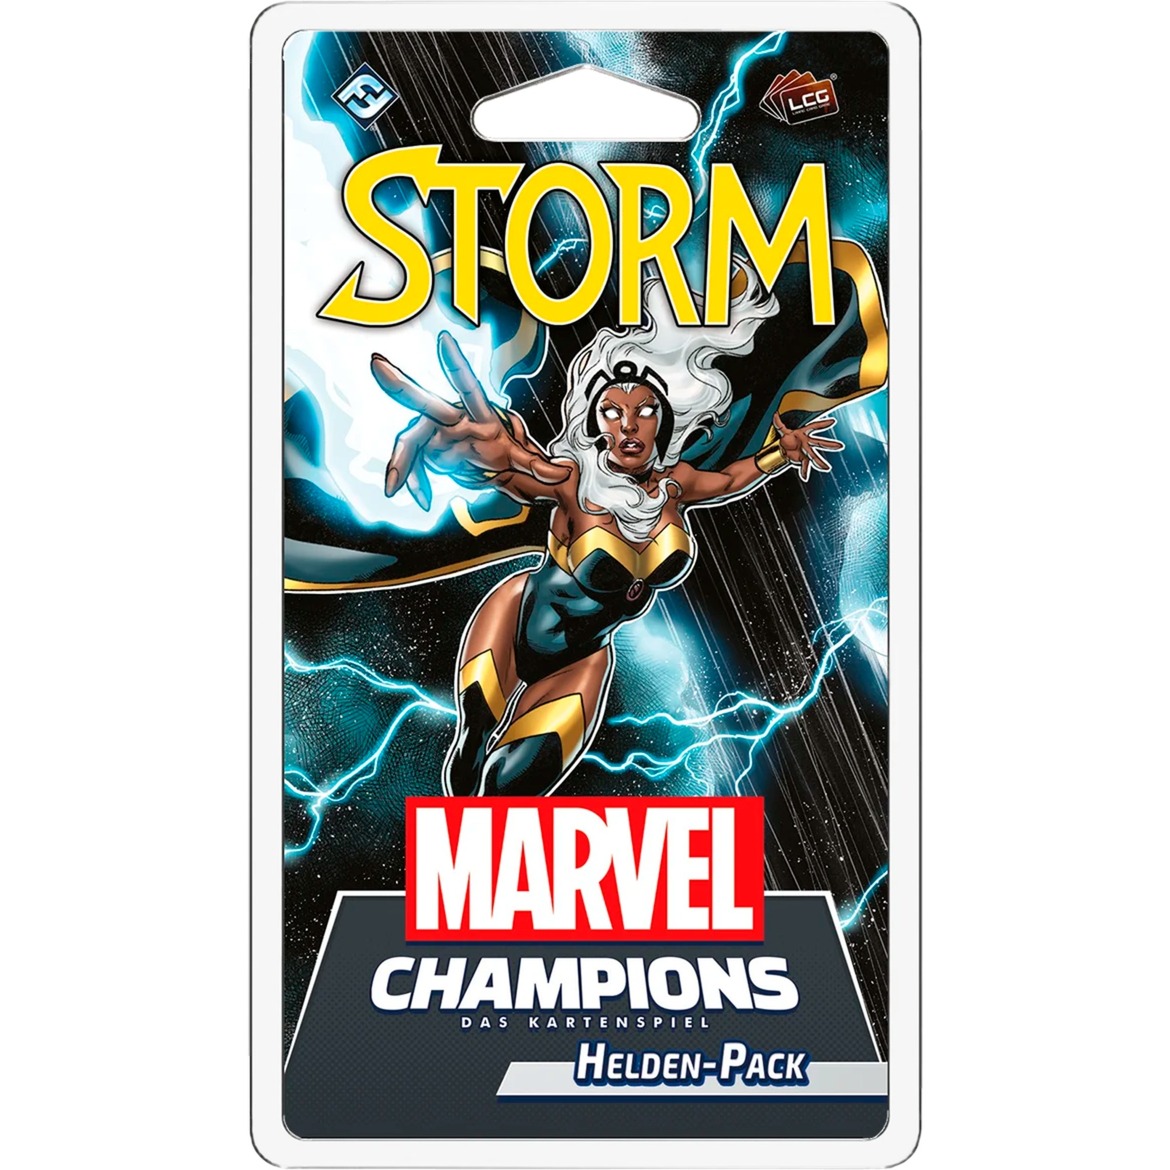 Marvel Champions: Das Kartenspiel - Storm (Helden-Pack) von Asmodee